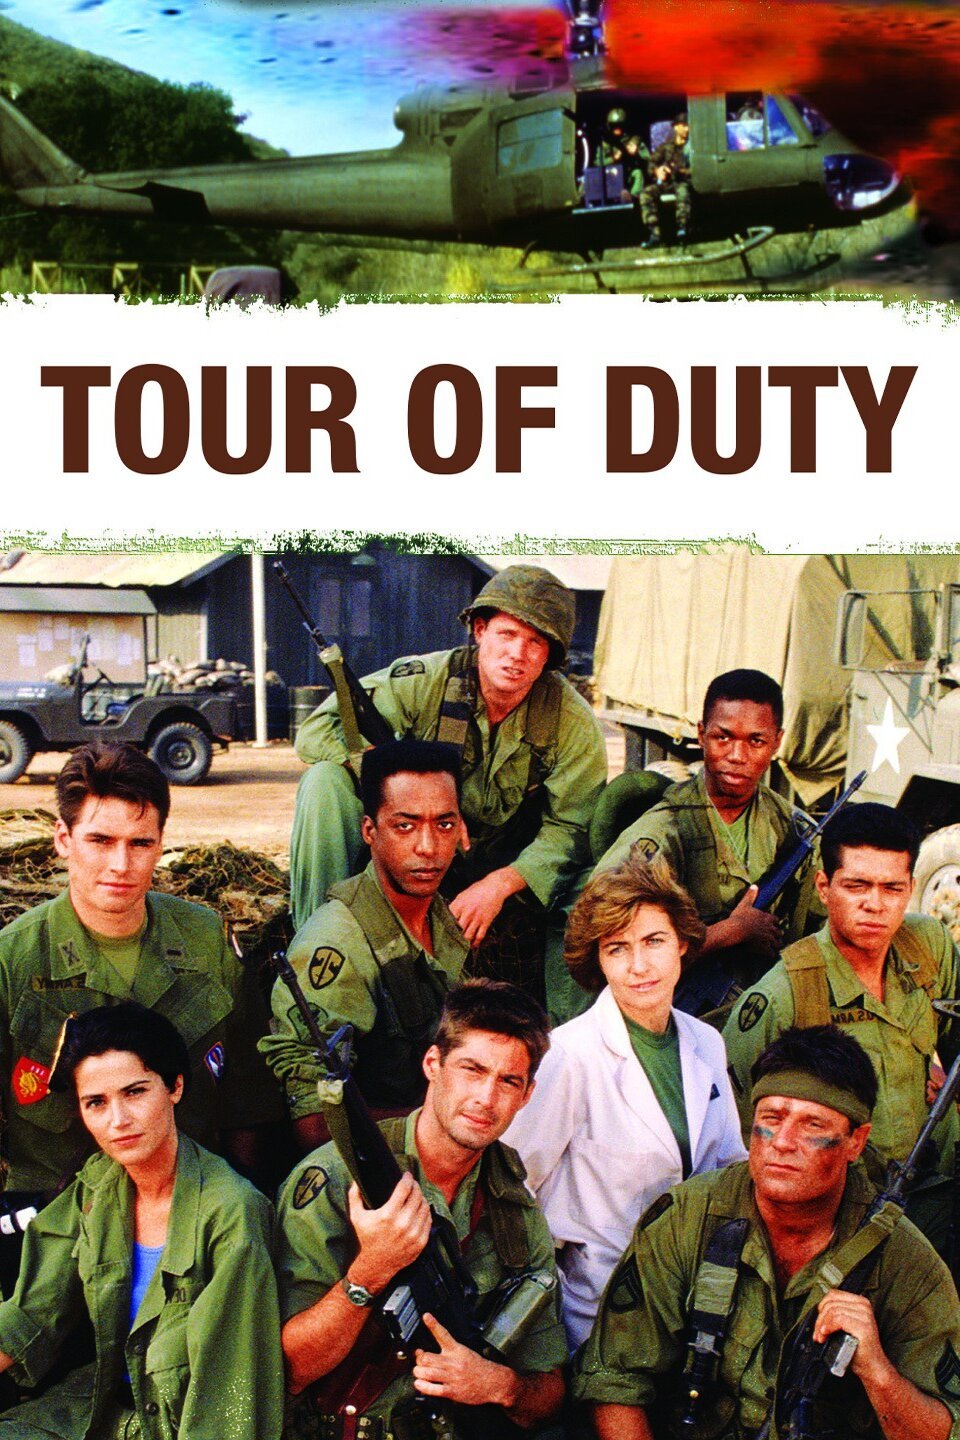 tour of duty season 2 episode 9